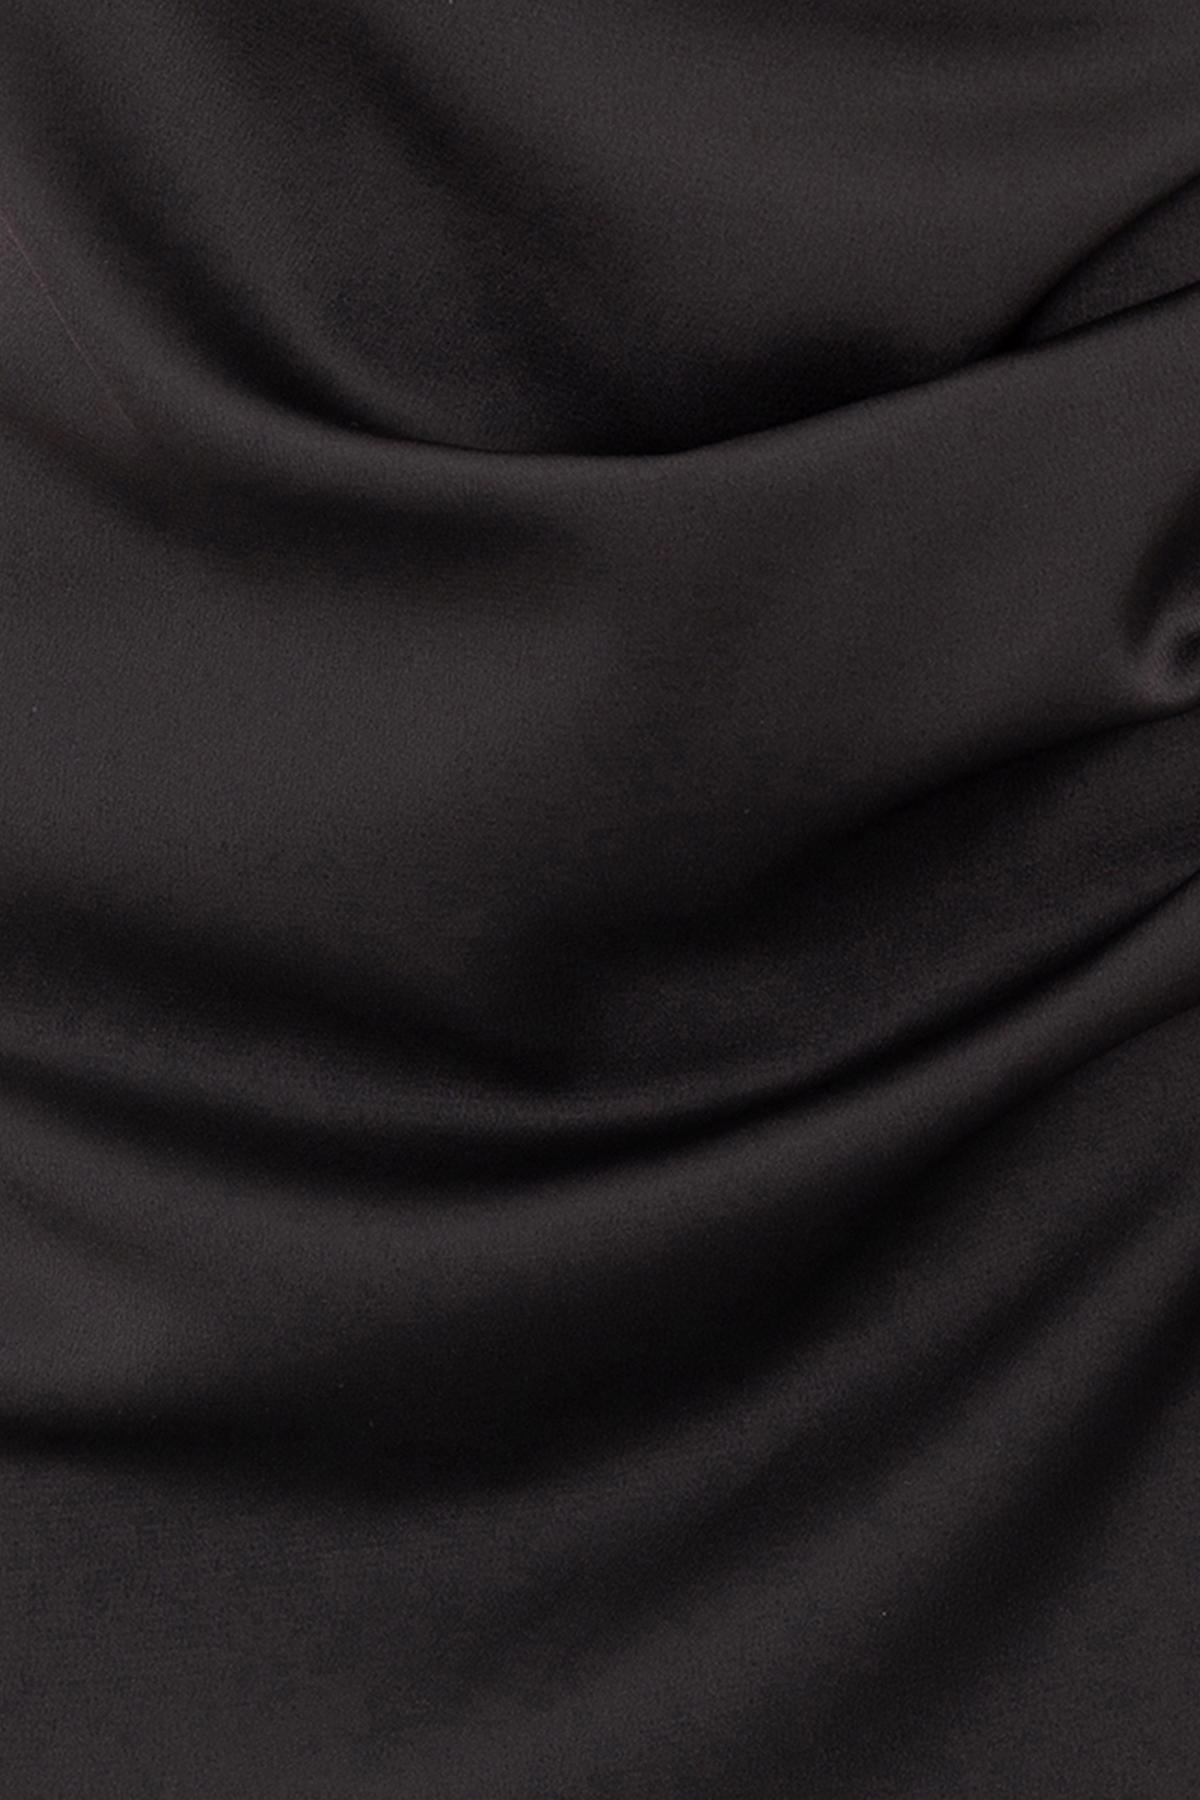 Bayan Siyah Sırt Çapraz Askılı Midi Elbise